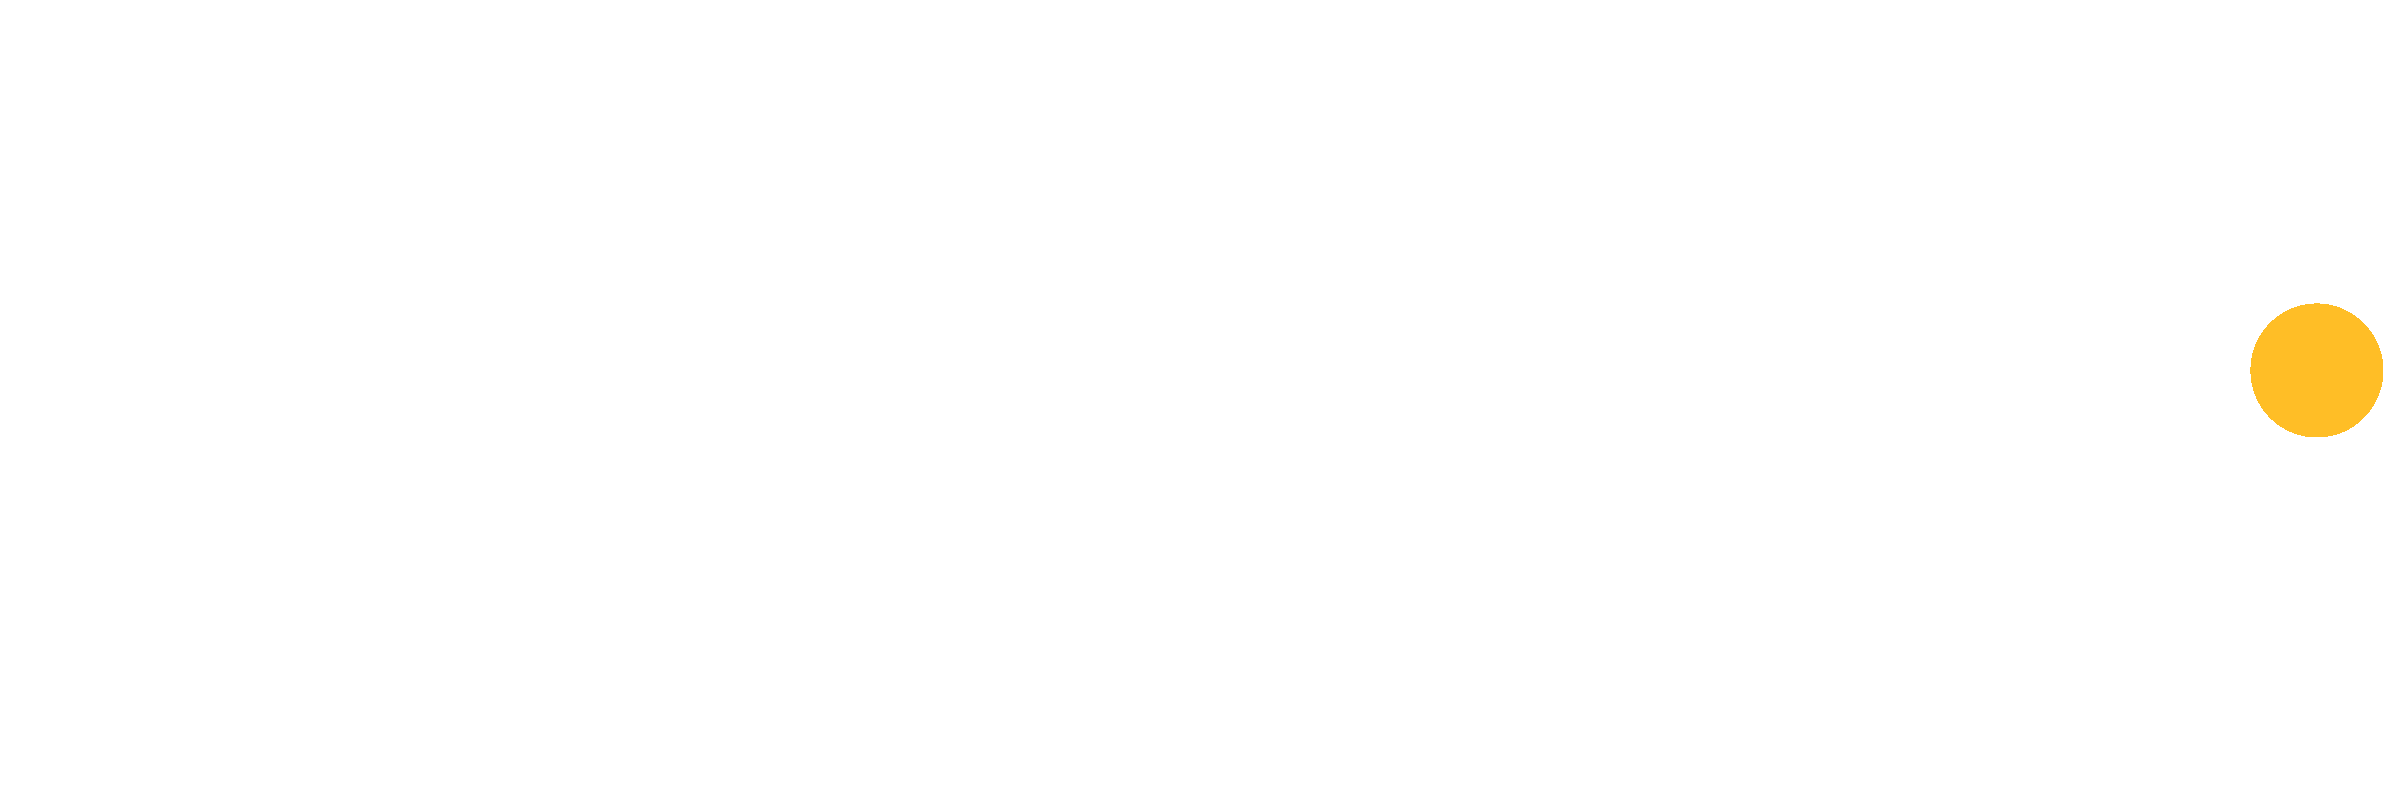 Optimum TV logo